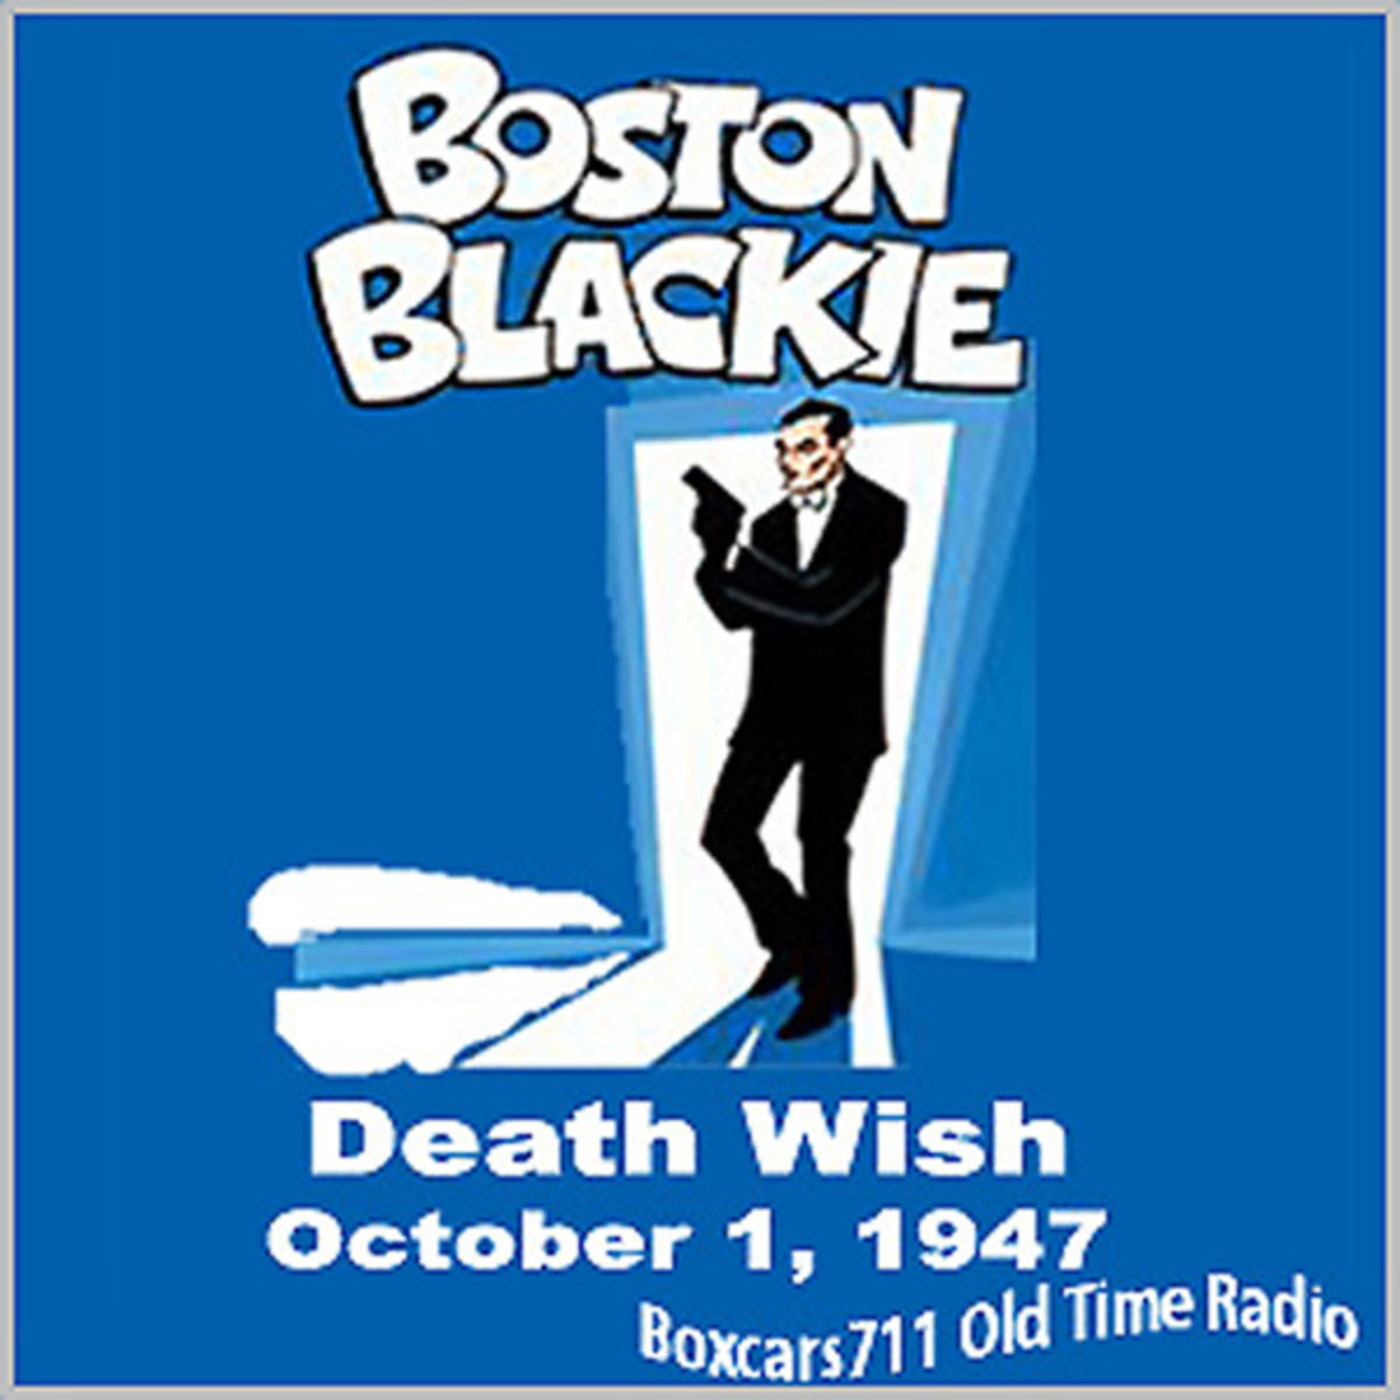 Episode 9597: Boston Blackie - 